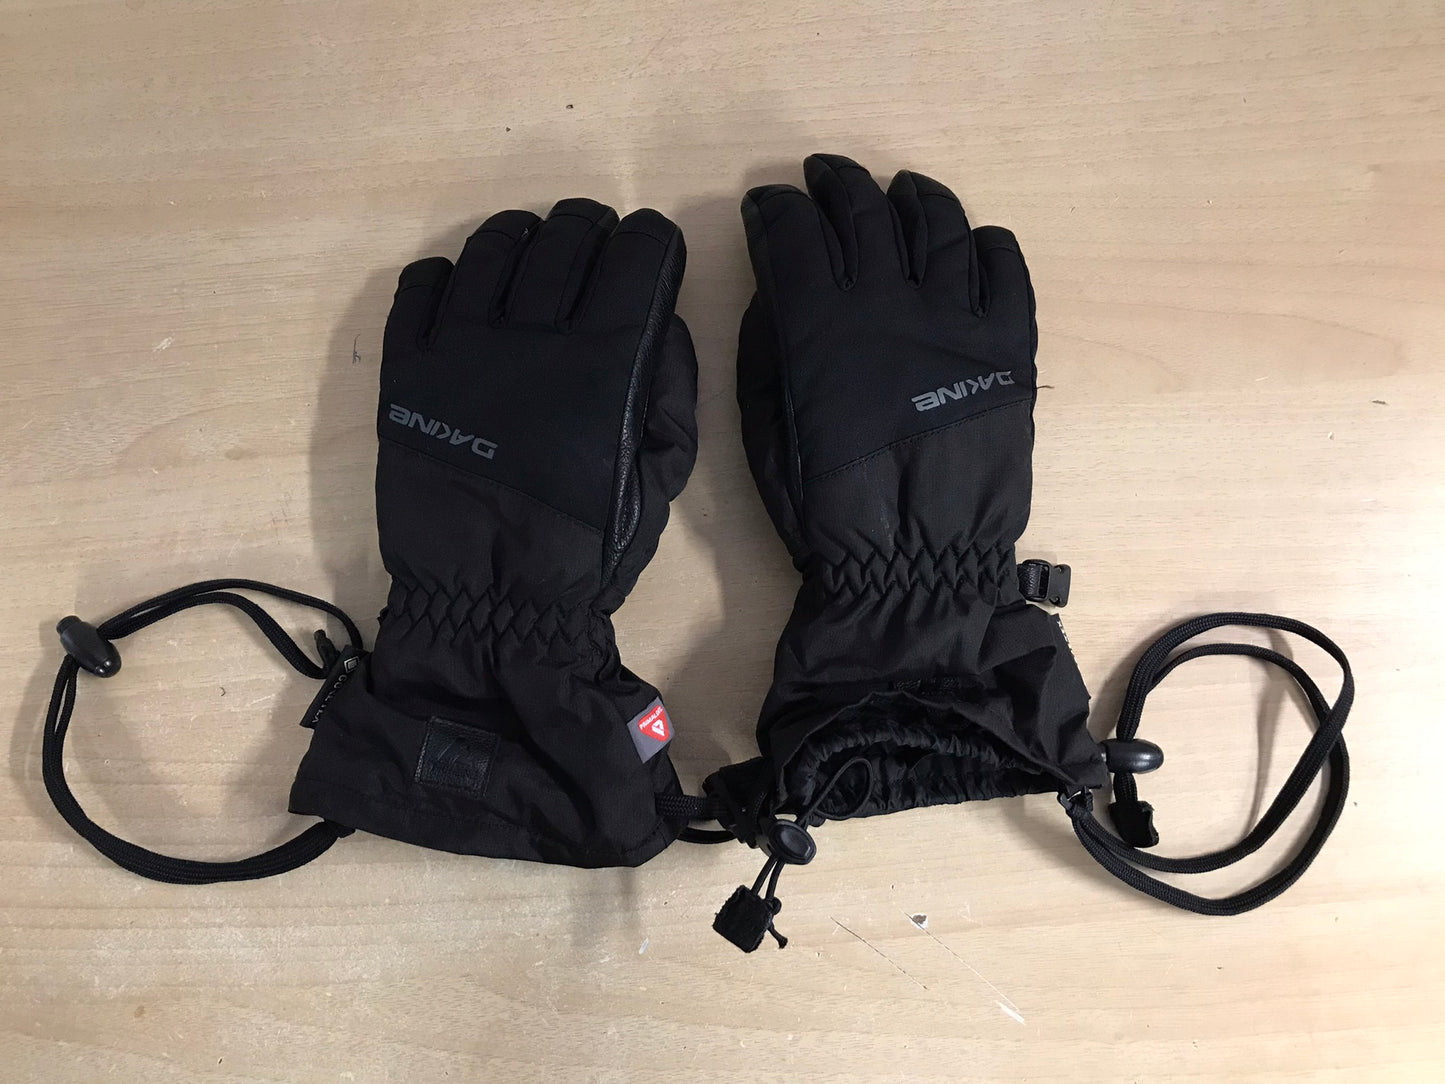 Winter Gloves and Mitts Child Size 4-6 Dakine Gore-Tex Plus Warm Waterproof Ski Gloves